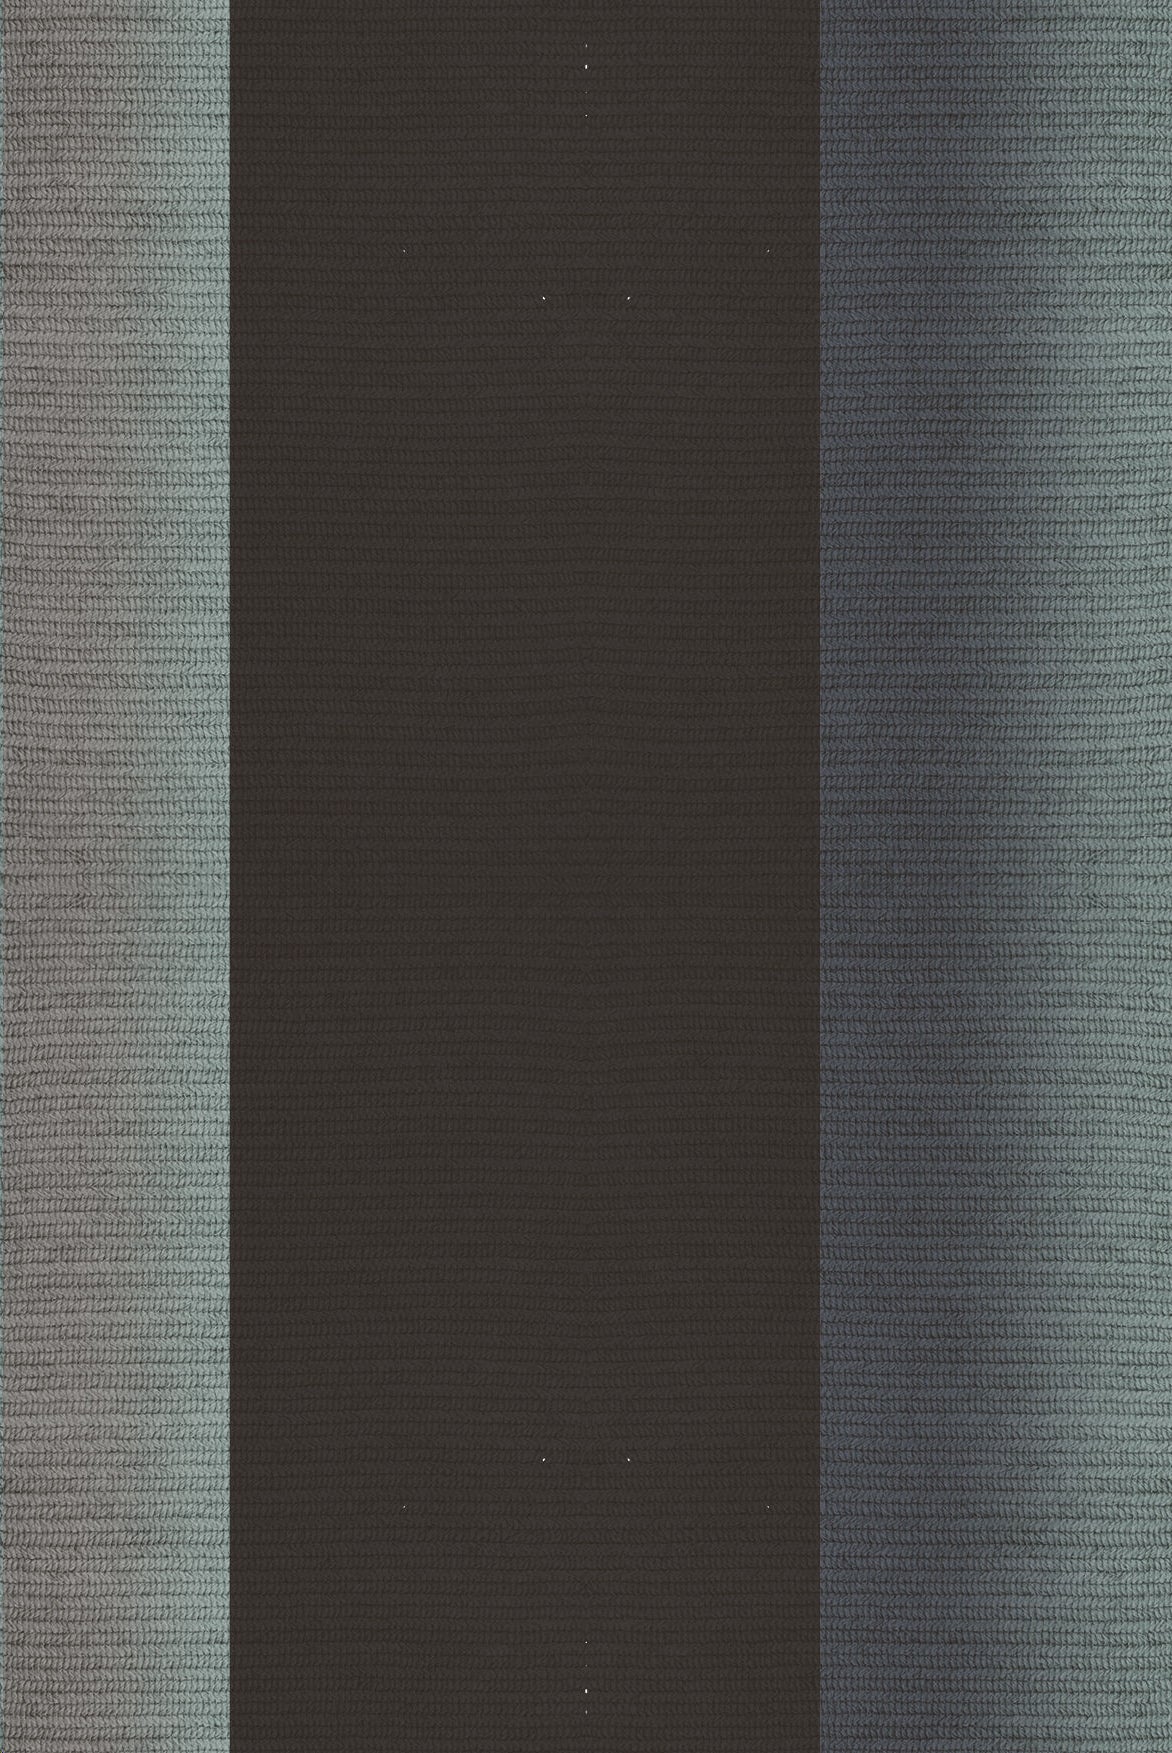 Claire Vos für Musett 'Blur' Abaca Indoor-Teppich in Farbe Sterling, 160 x 240 cm